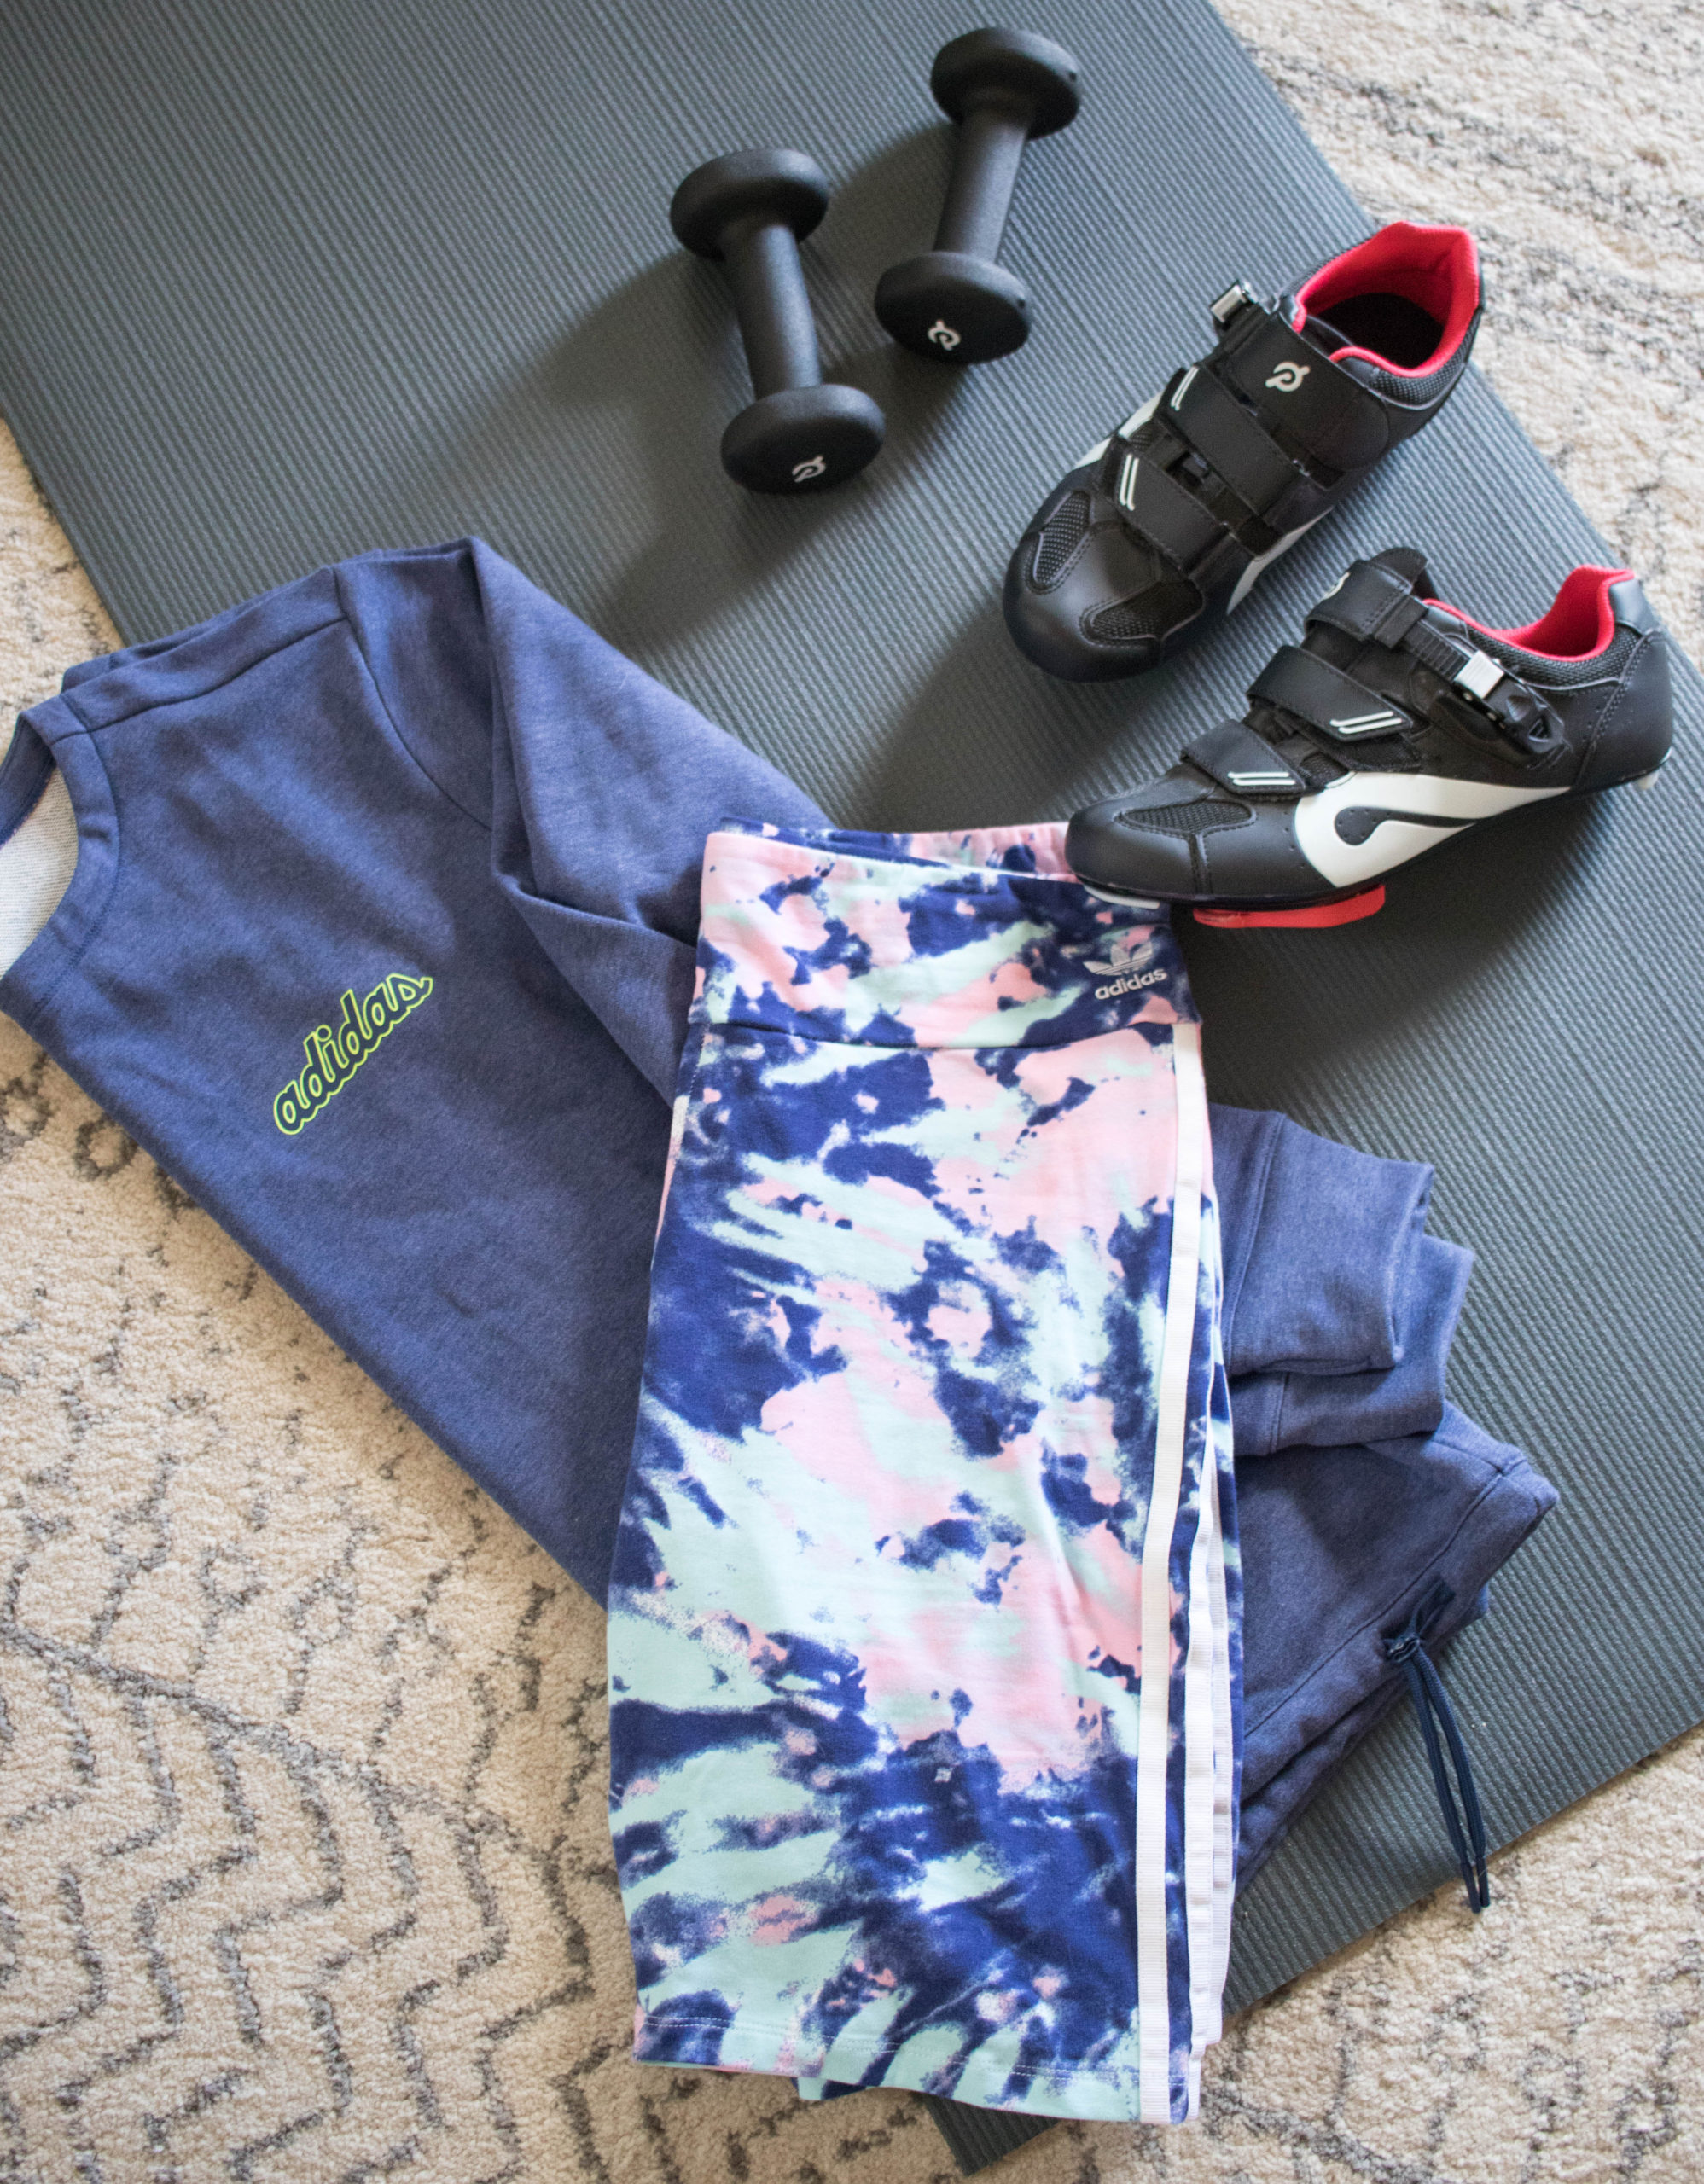 3 easy ways to stay active #peleton #Adidas #athomeworkout